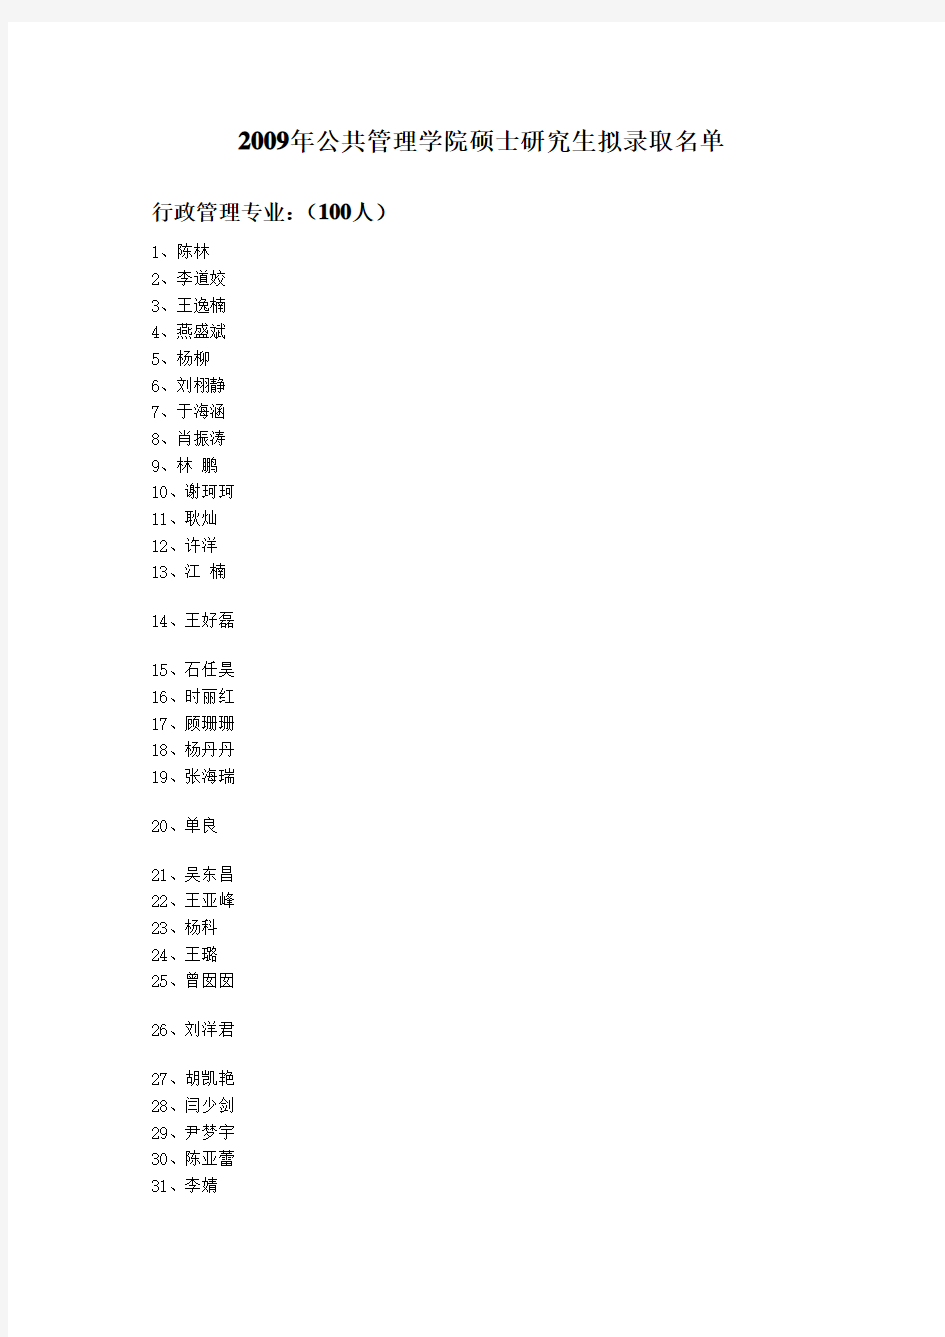 郑州大学2009年公共管理学院硕士研究生拟录取名单